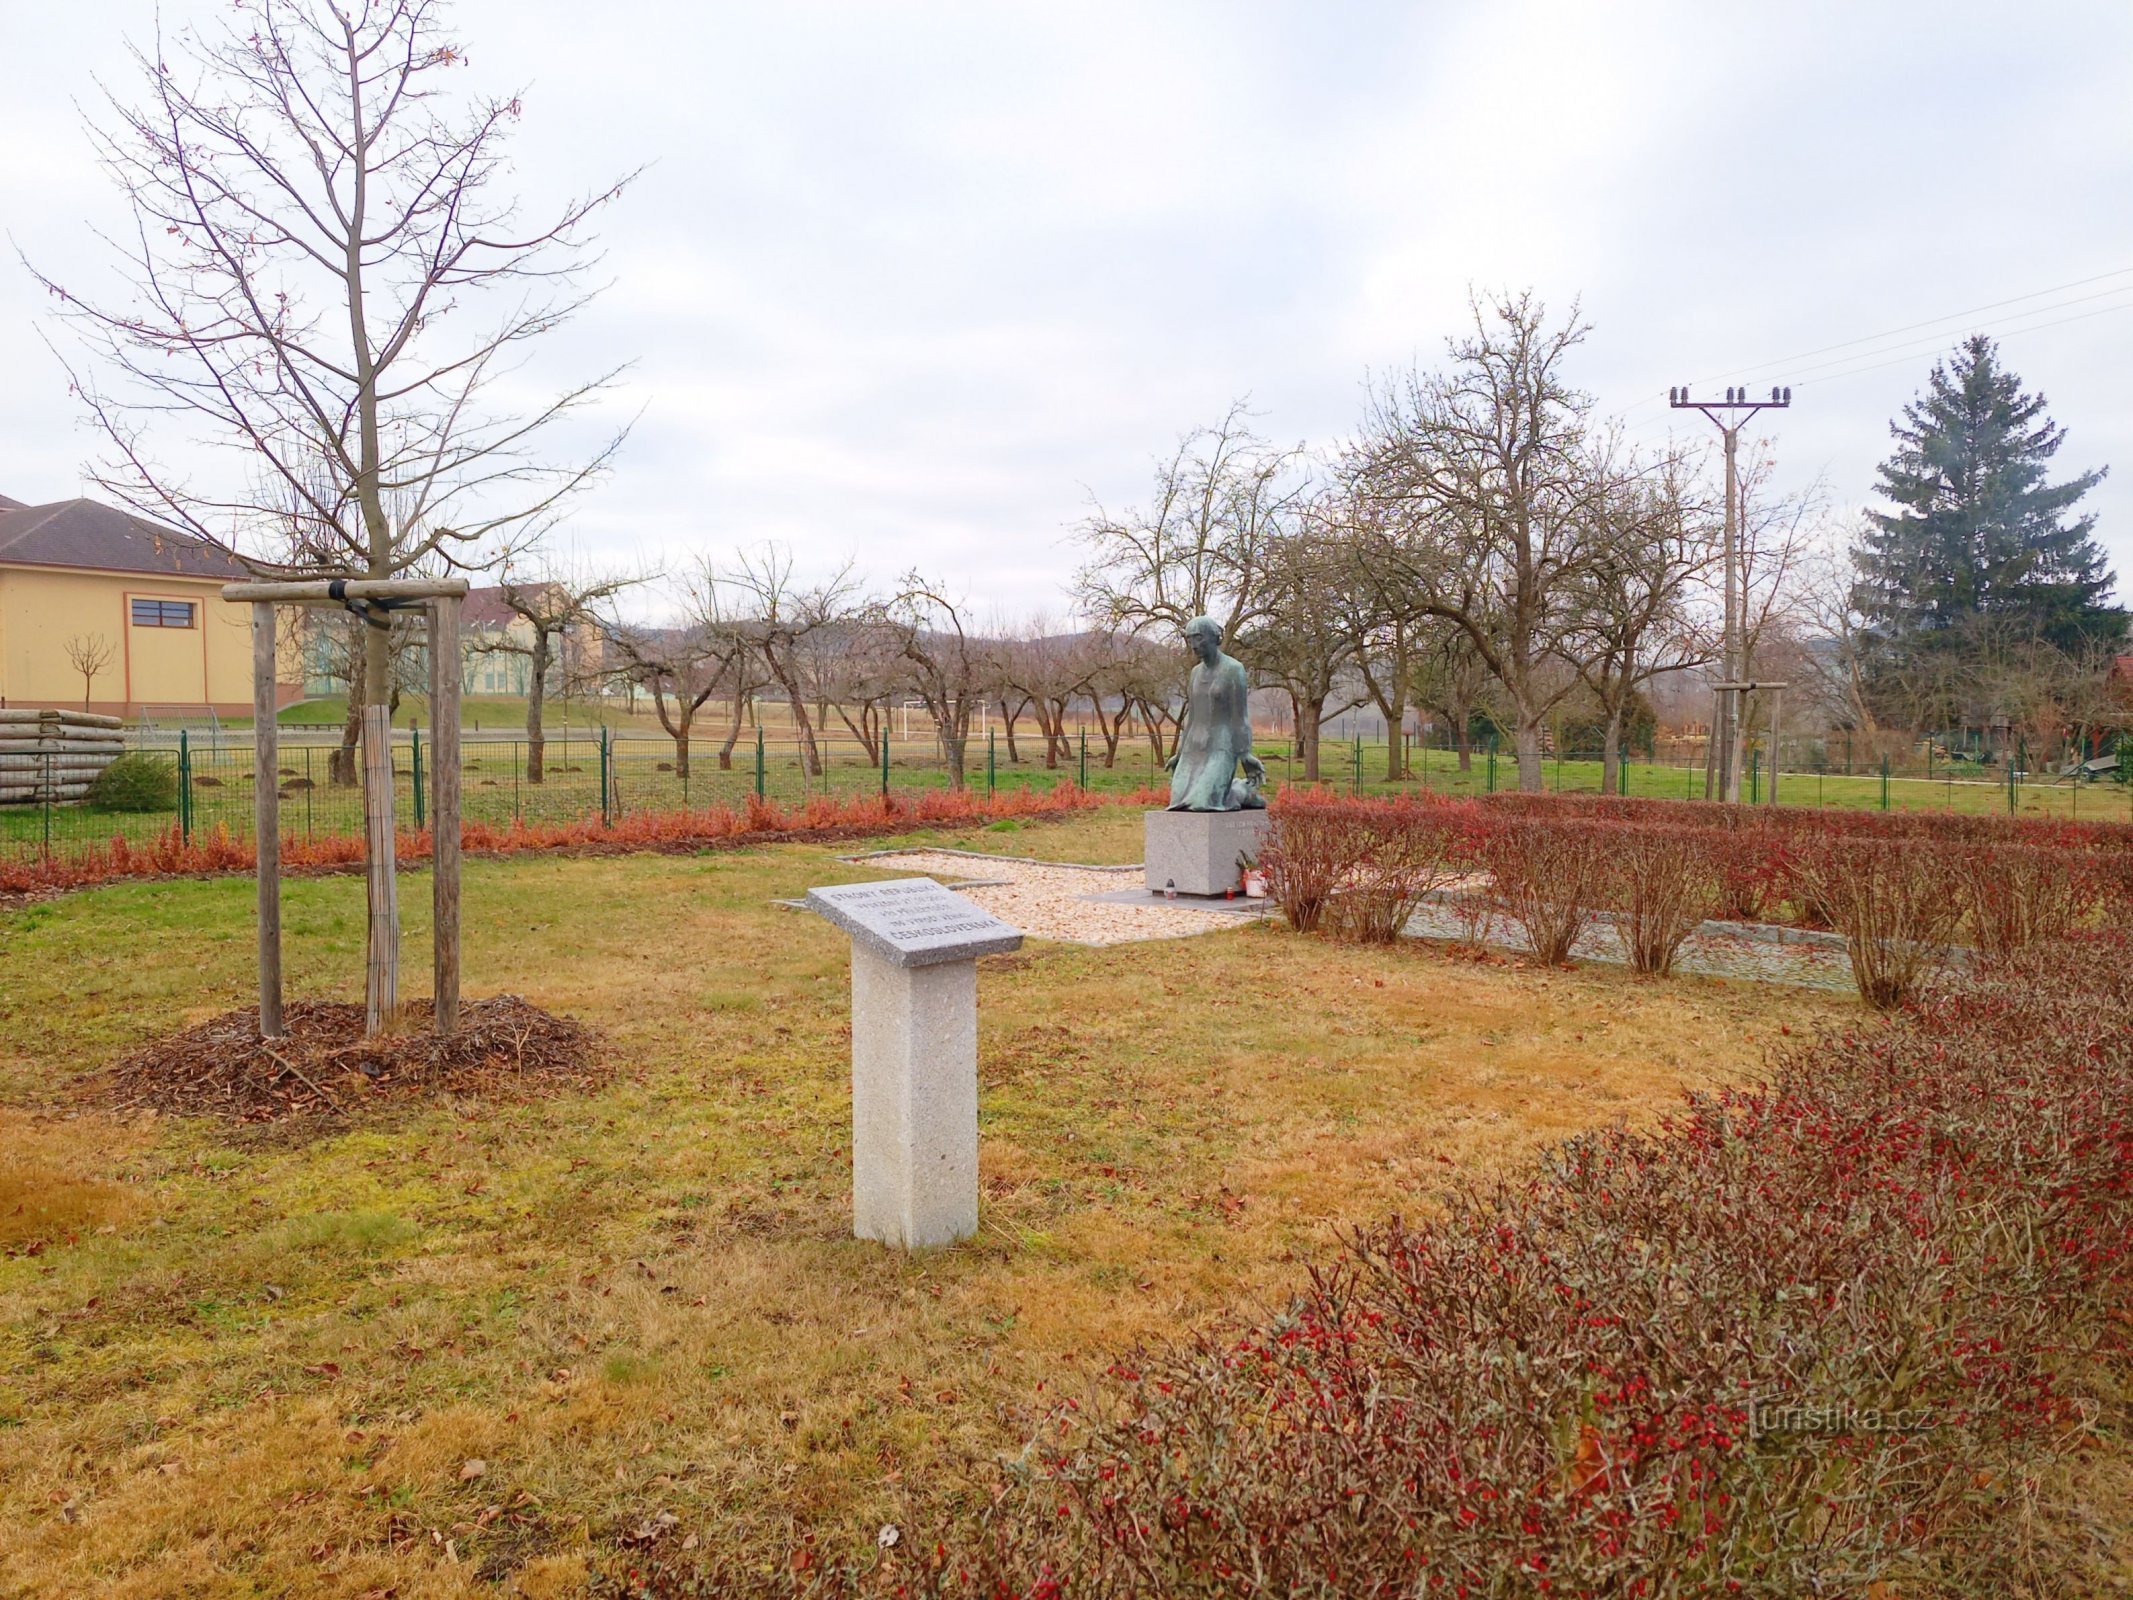 2. Monument aux victimes de la guerre à Sedlec